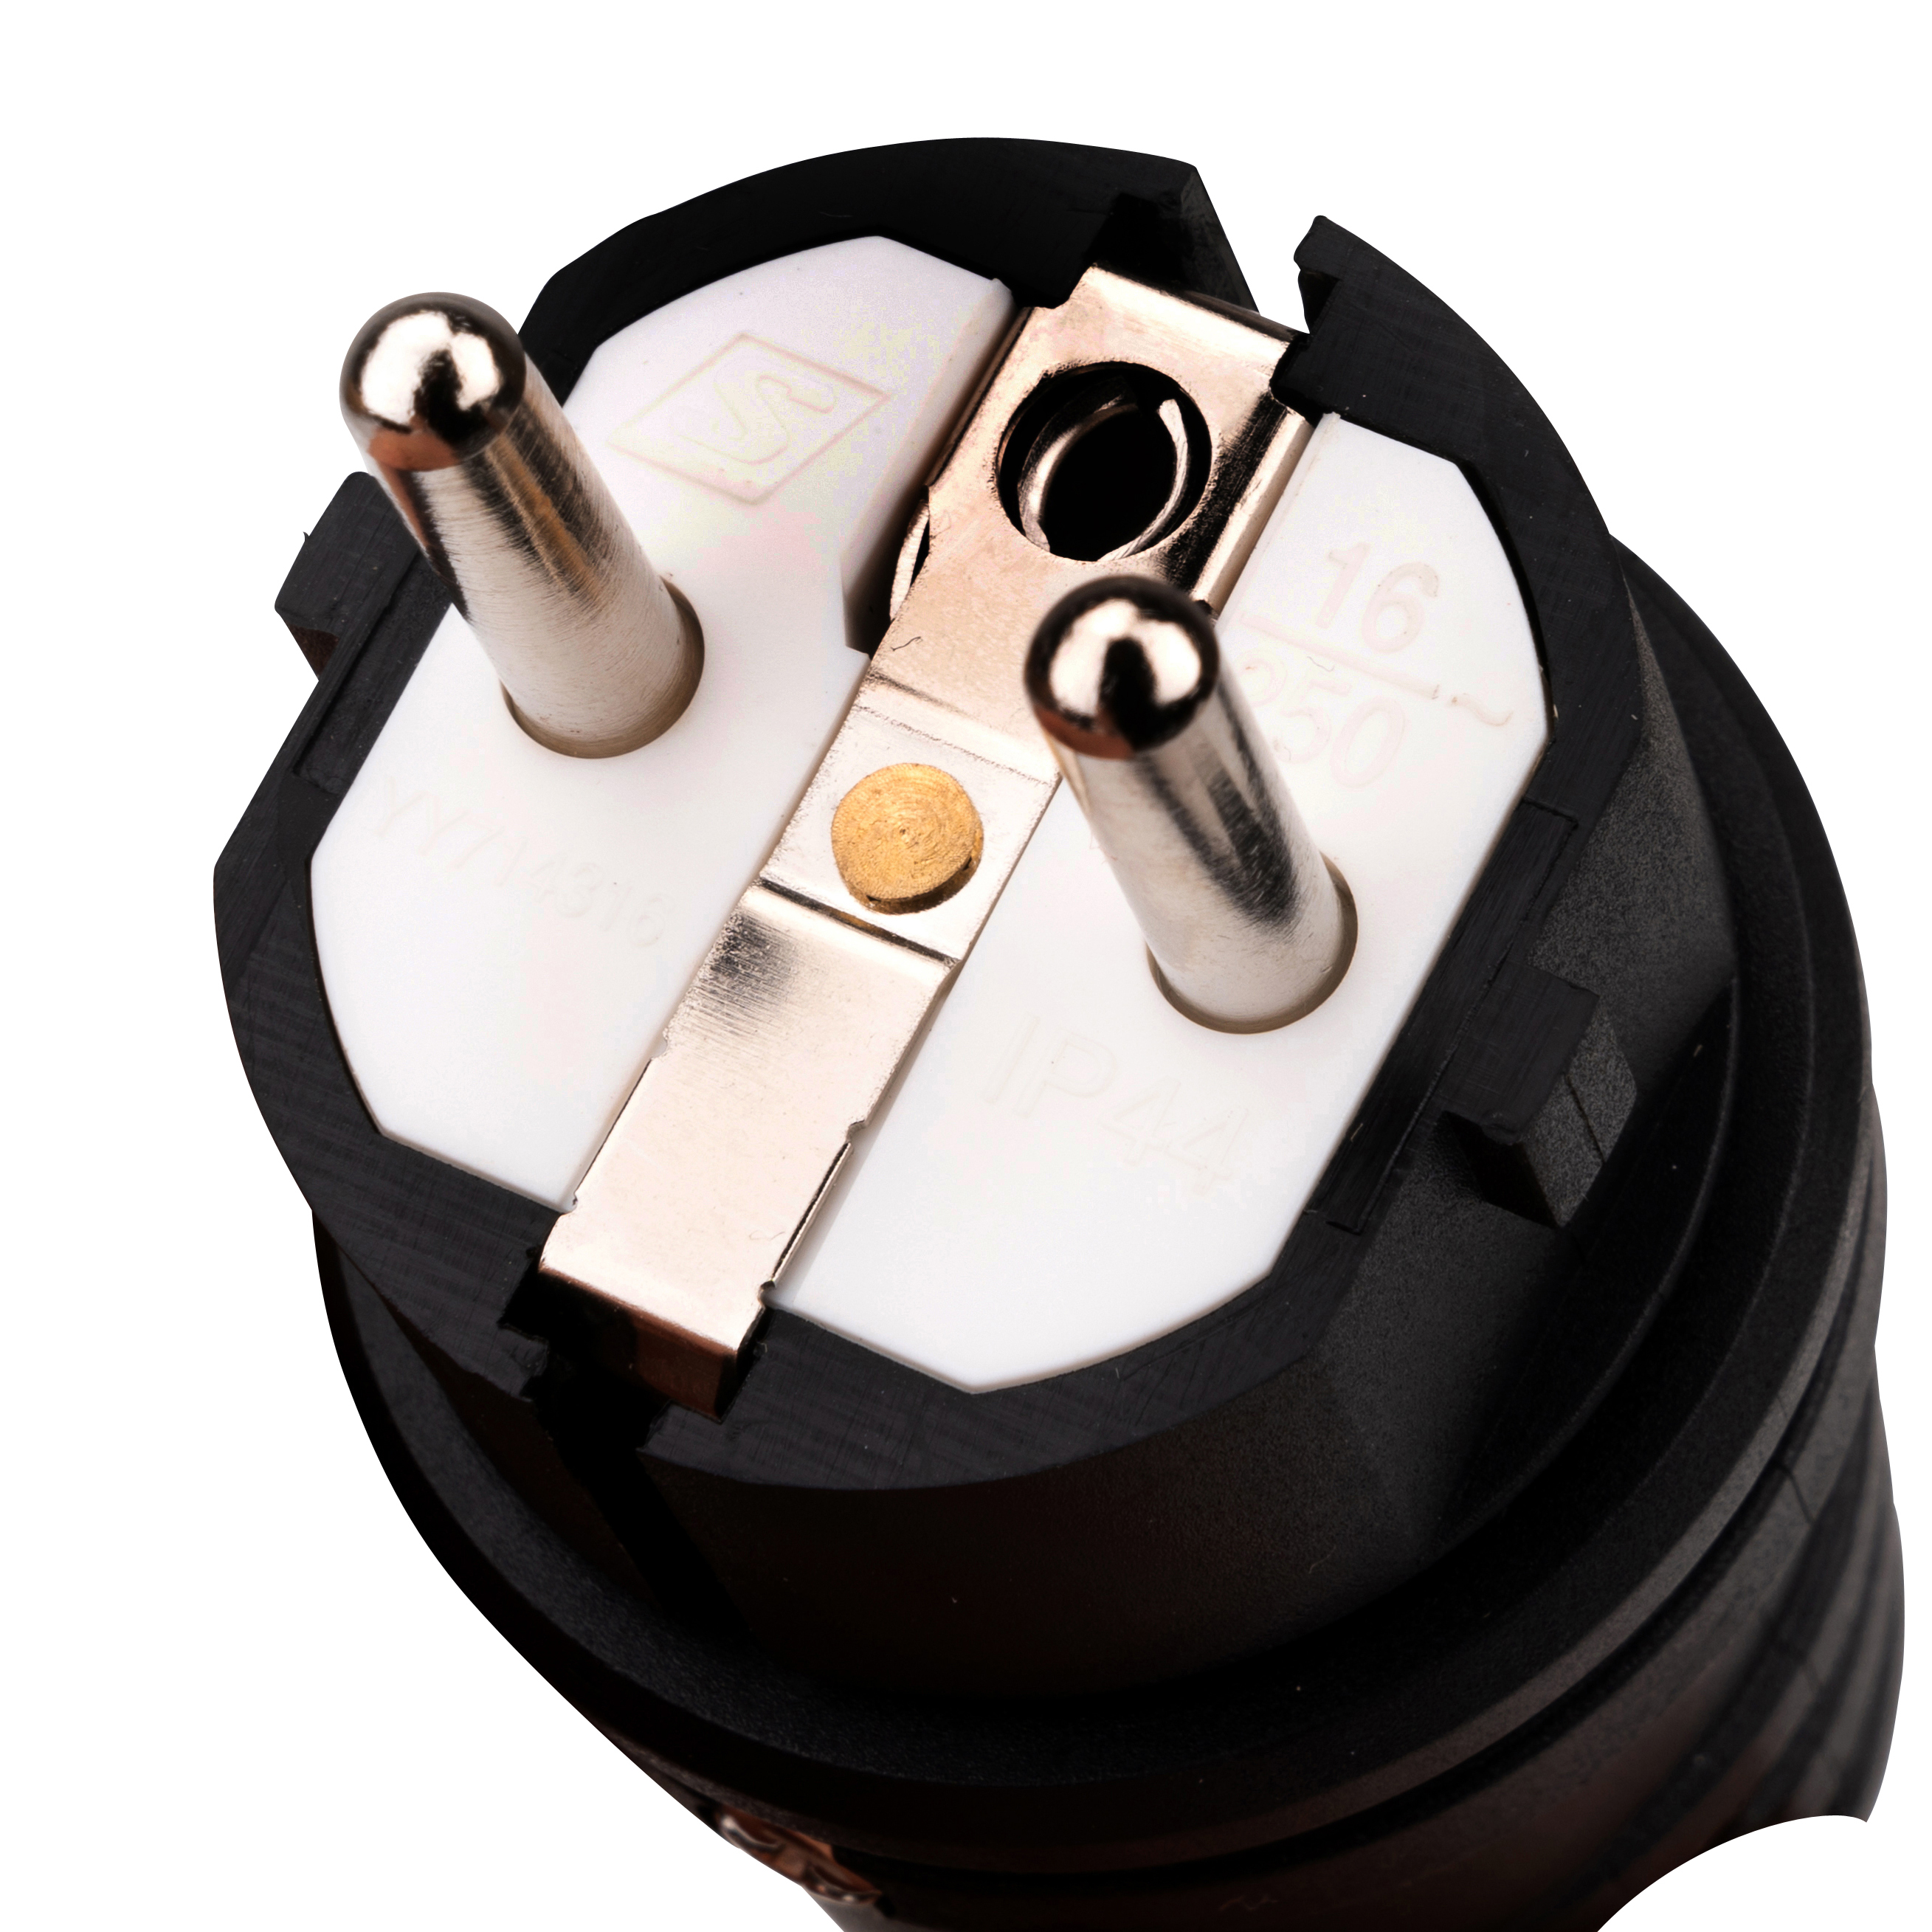 Schukostecker schwarz, Schutzkontaktstecker schwarz, Schuko-Stecker mit  Zugentlastung IP44 16A 250V, mit doppeltem Schutzkontakt, Haushaltsgeräte, Haushalt